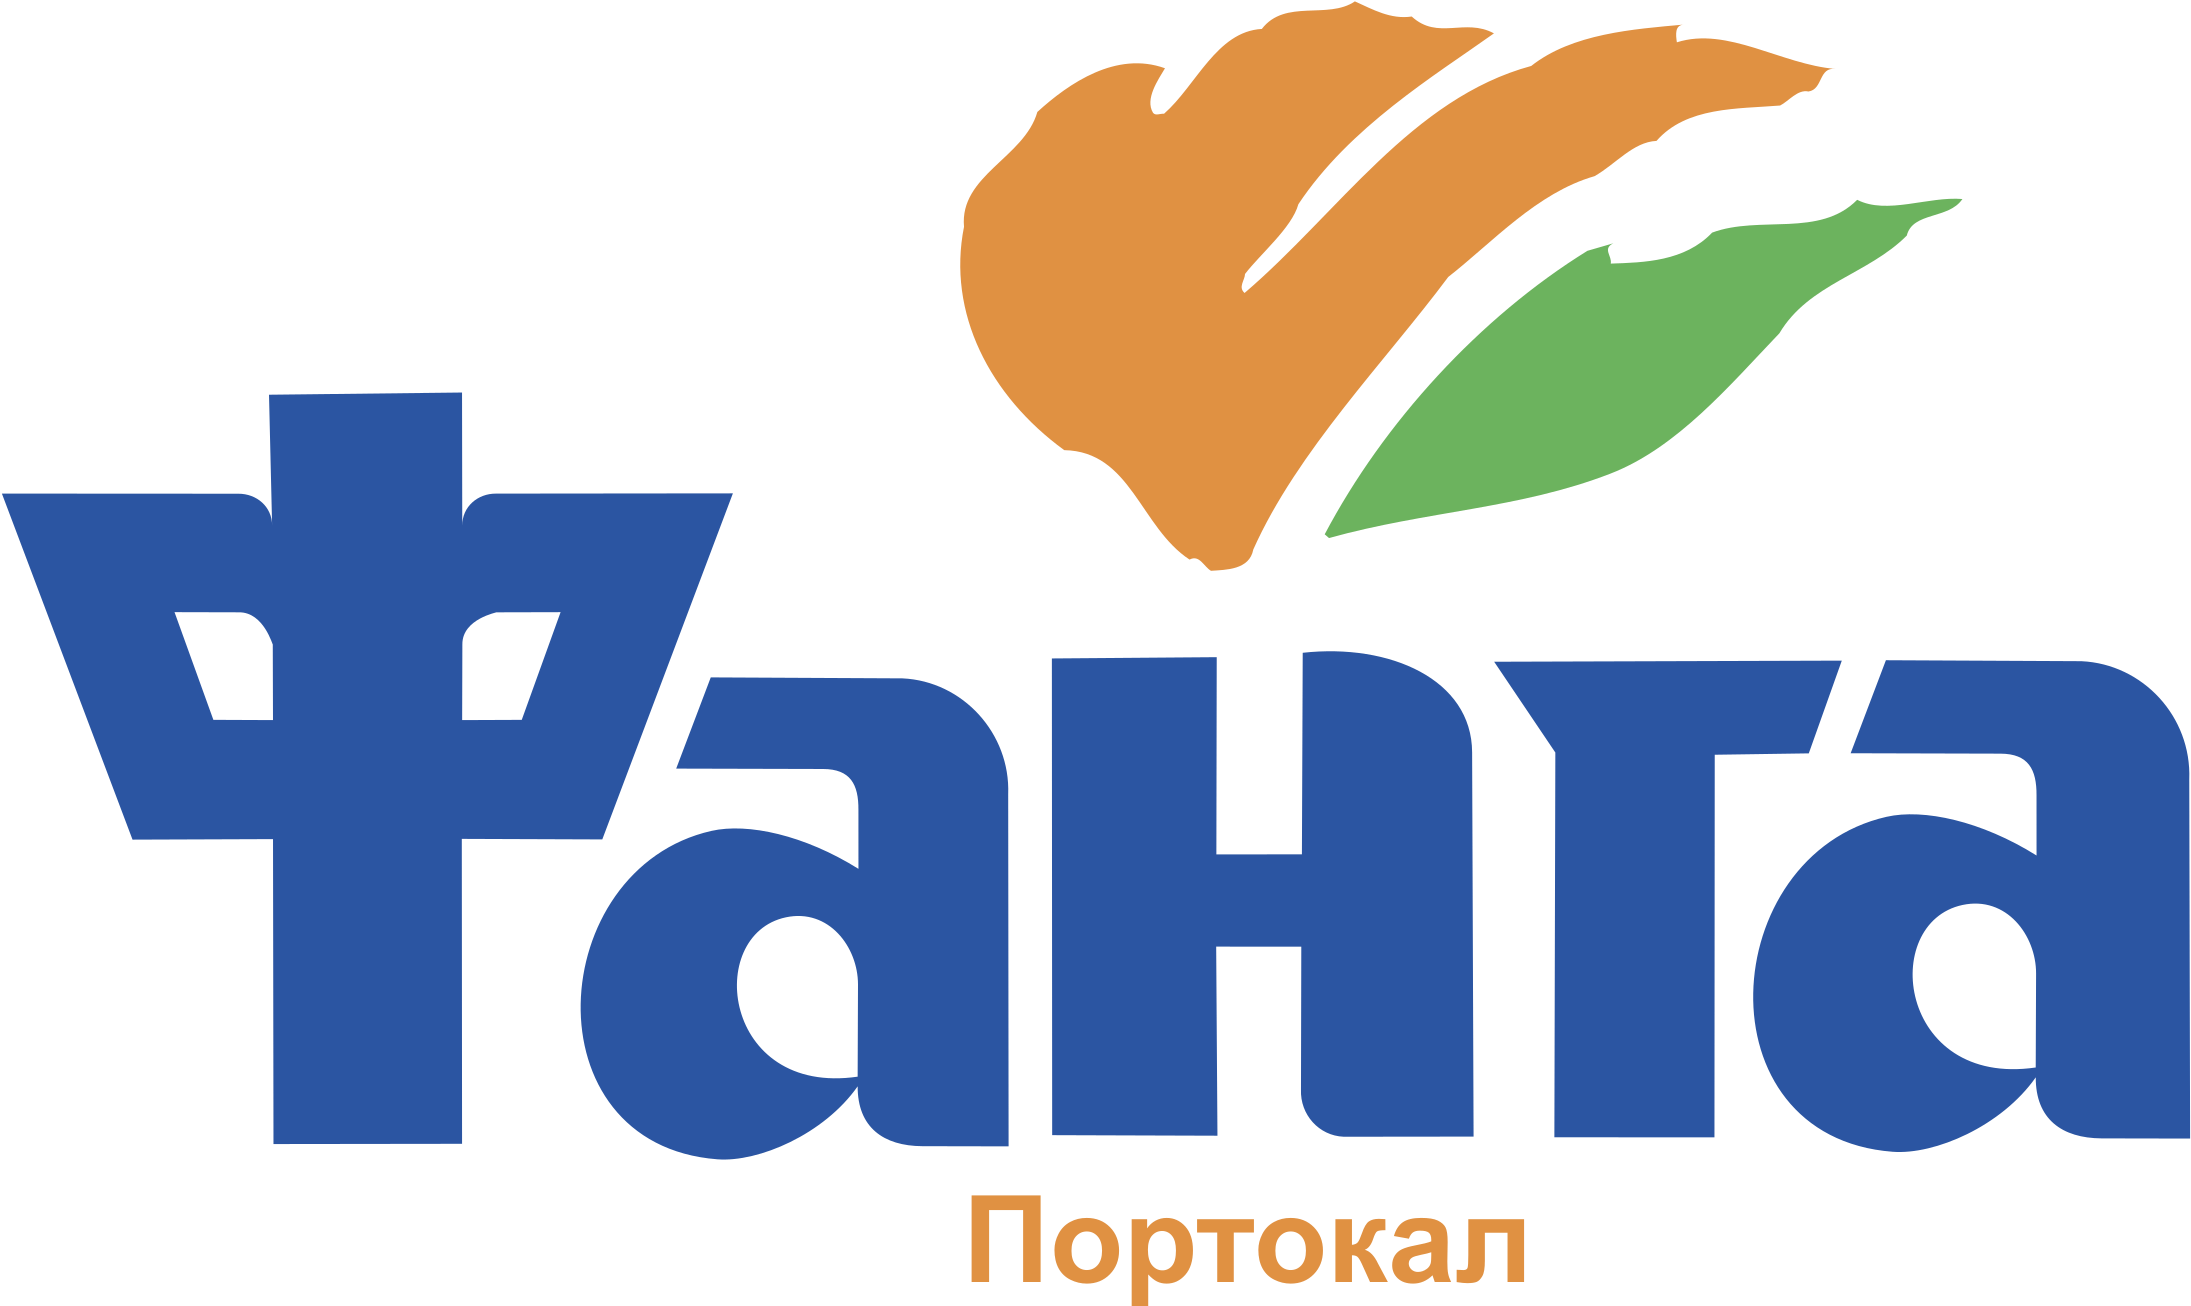 Fanta Logo Png Transparent - Fanta Old Logo Vs New (2400x2400), Png Download